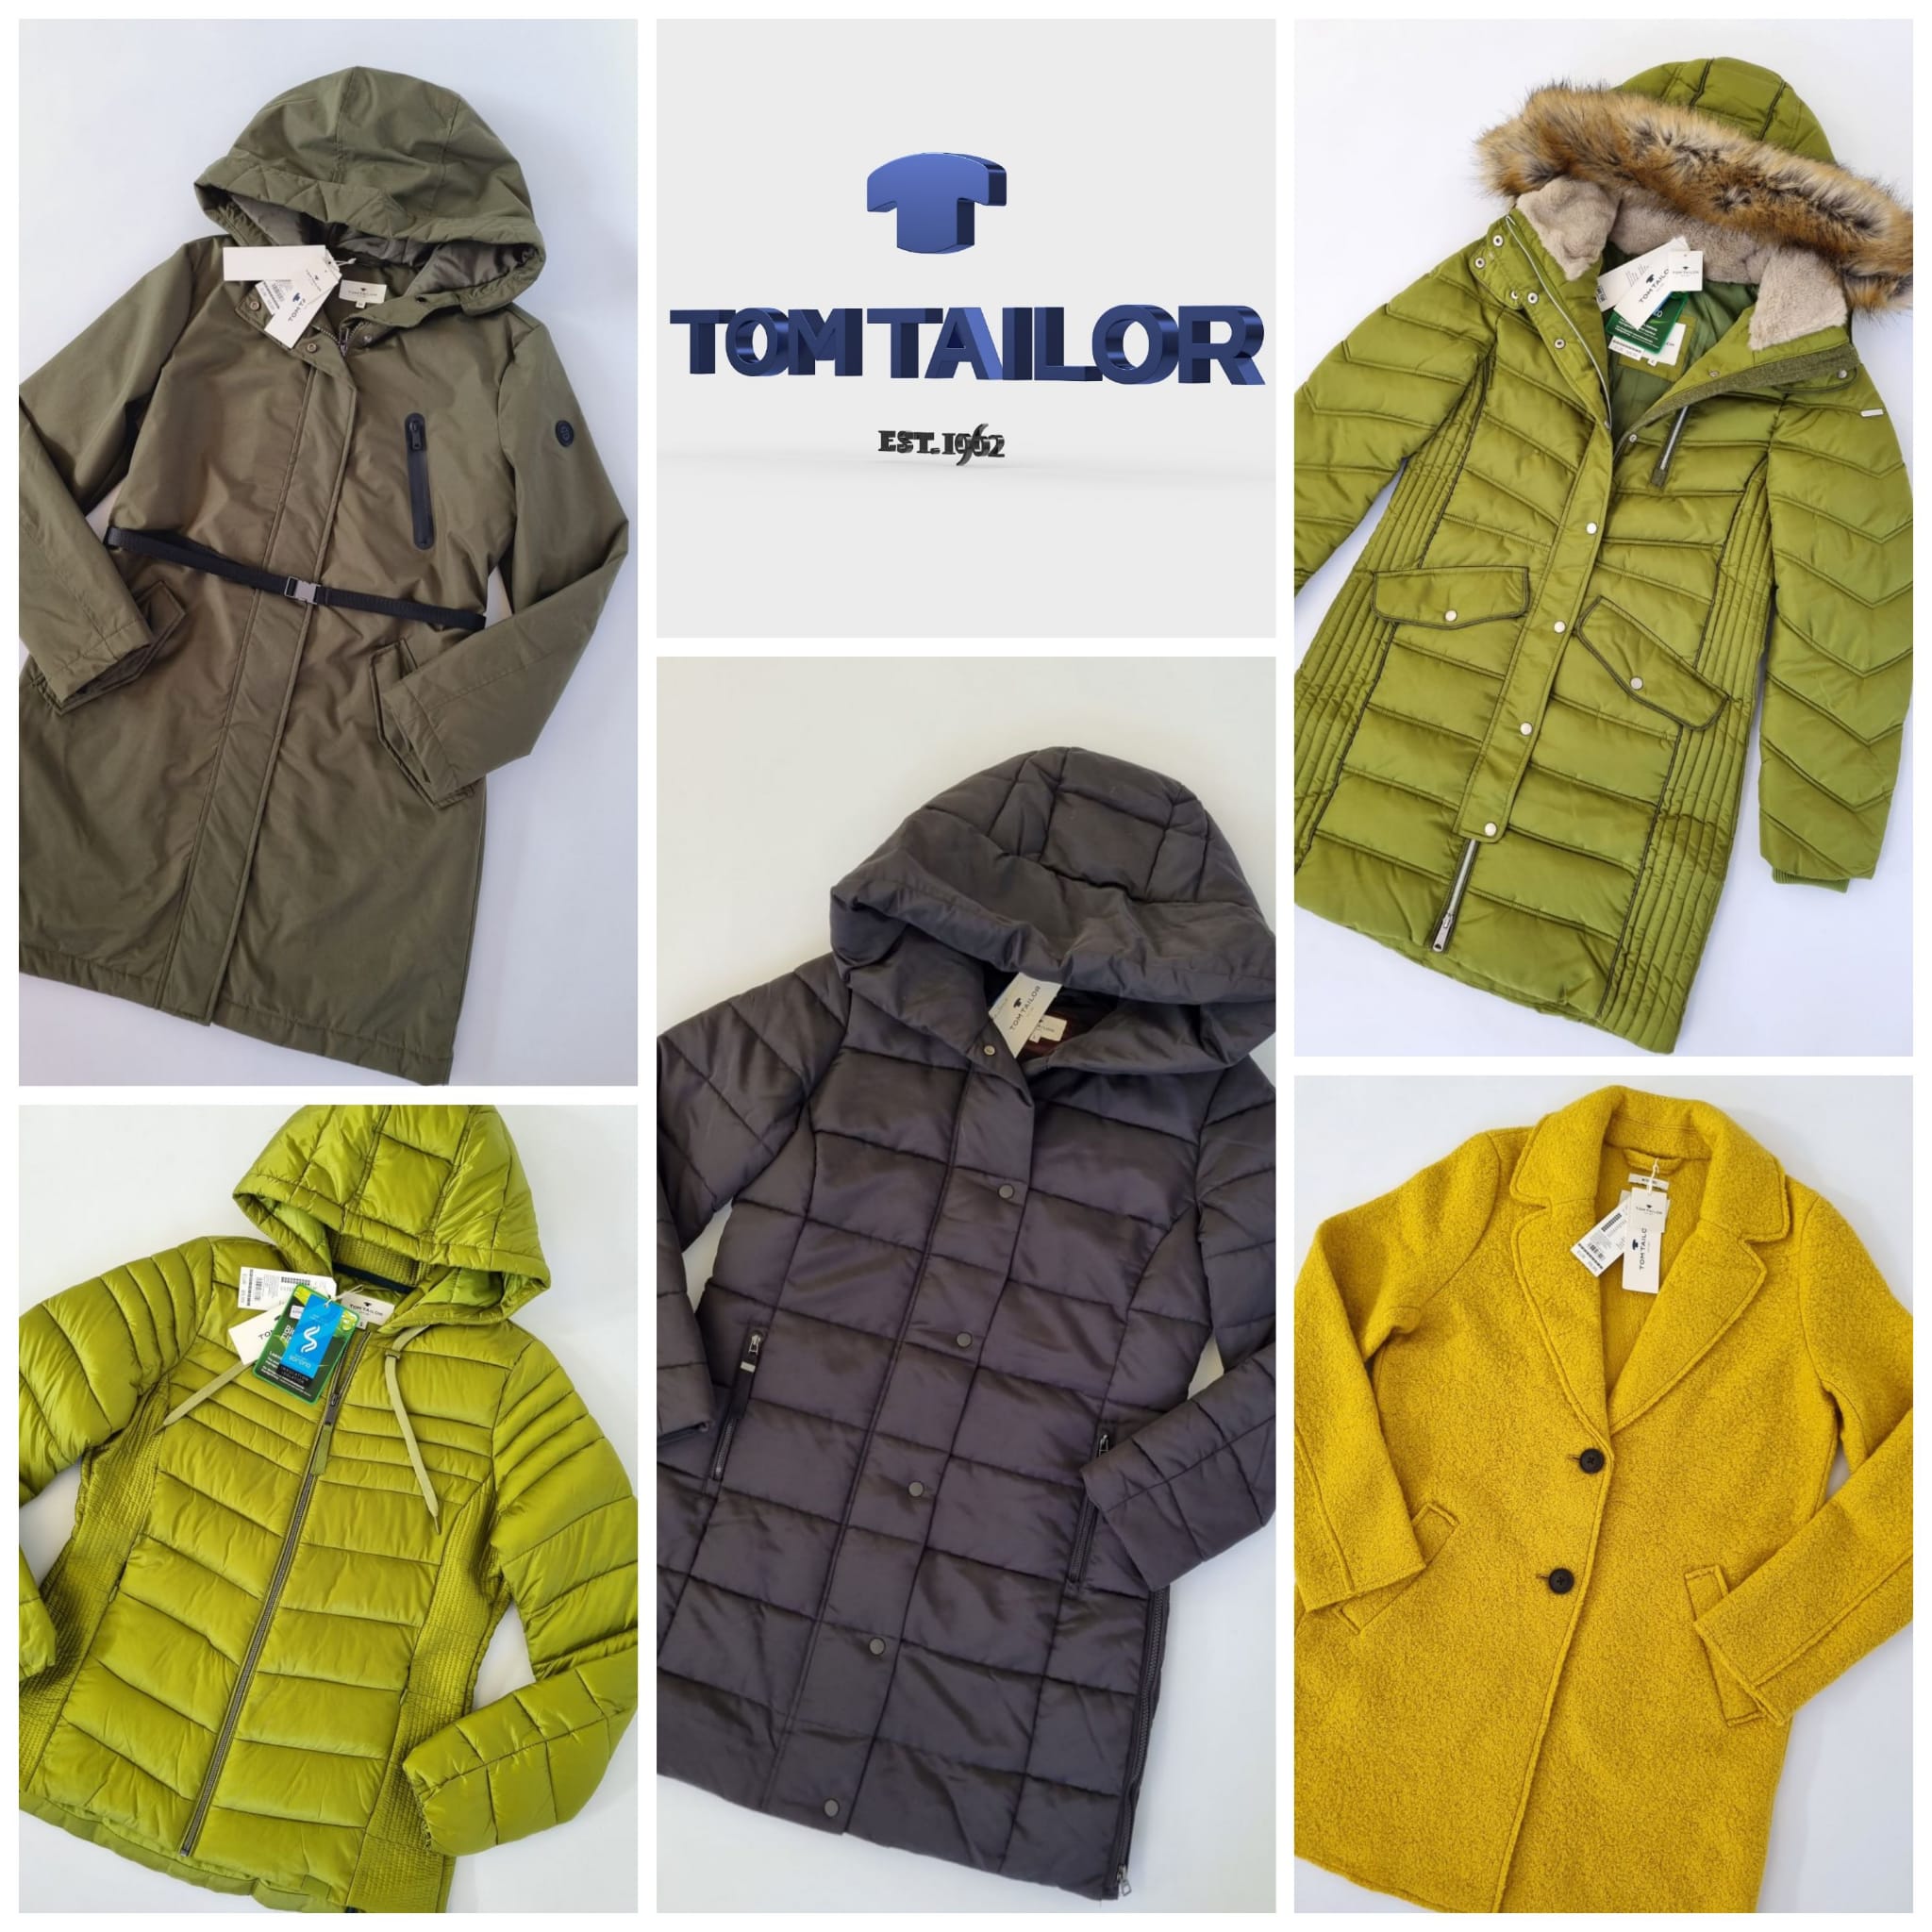 Микс женских пальто и курток от Tom Tailor